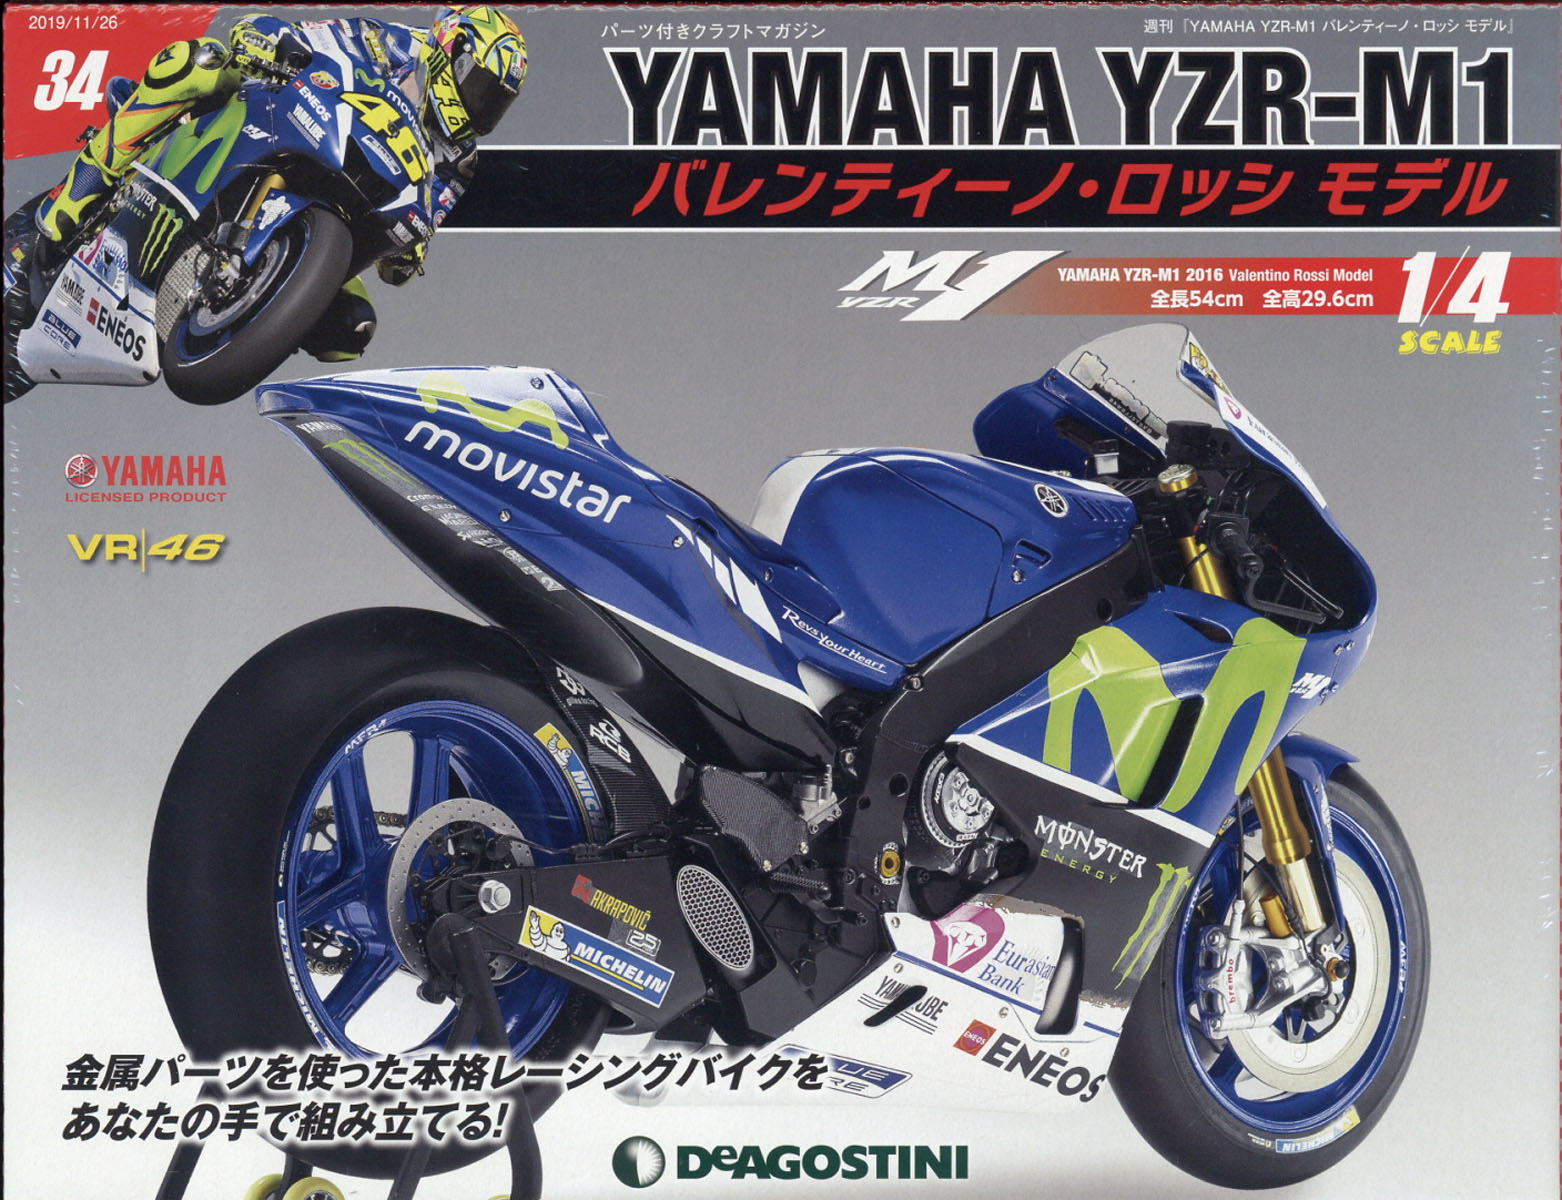 週刊 YAMAHA YZR-1 バレンティーノ・ロッシ モデル 2019年 11/26号 [雑誌]